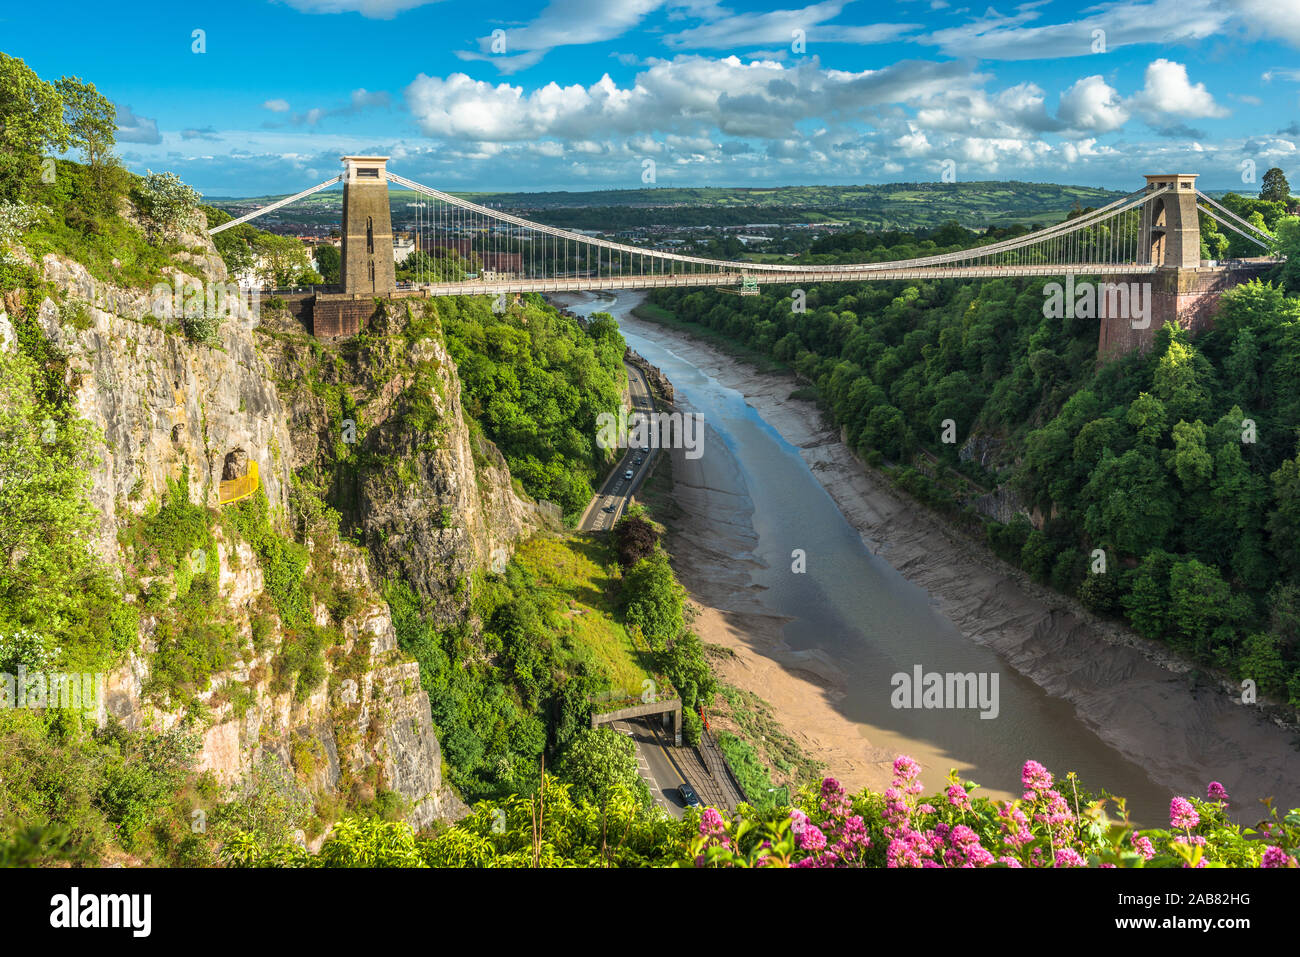 Clifton Suspension Bridge historique par Isambard Kingdom Brunel enjambe la rivière Avon Avon Gorge avec ci-dessous, Bristol, Angleterre, Royaume-Uni, Europe Banque D'Images